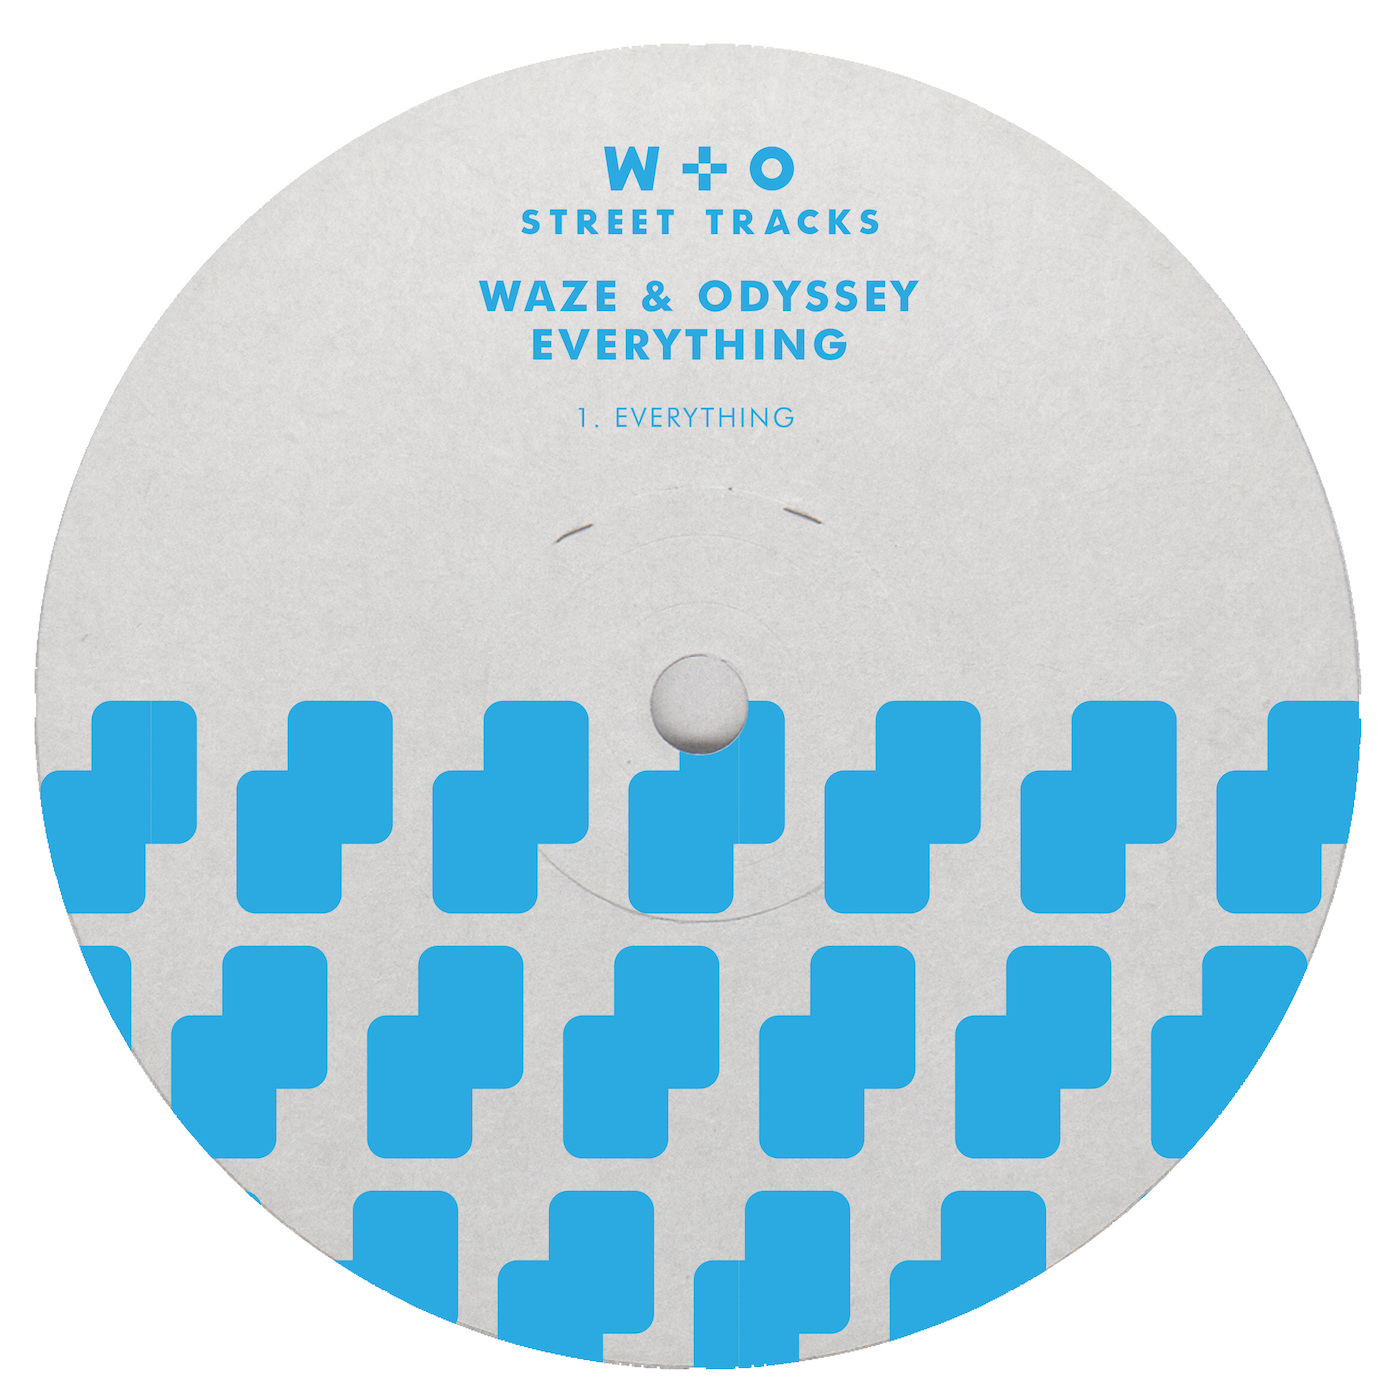 Waze & Odyssey - Everything / W&O Street Tracks